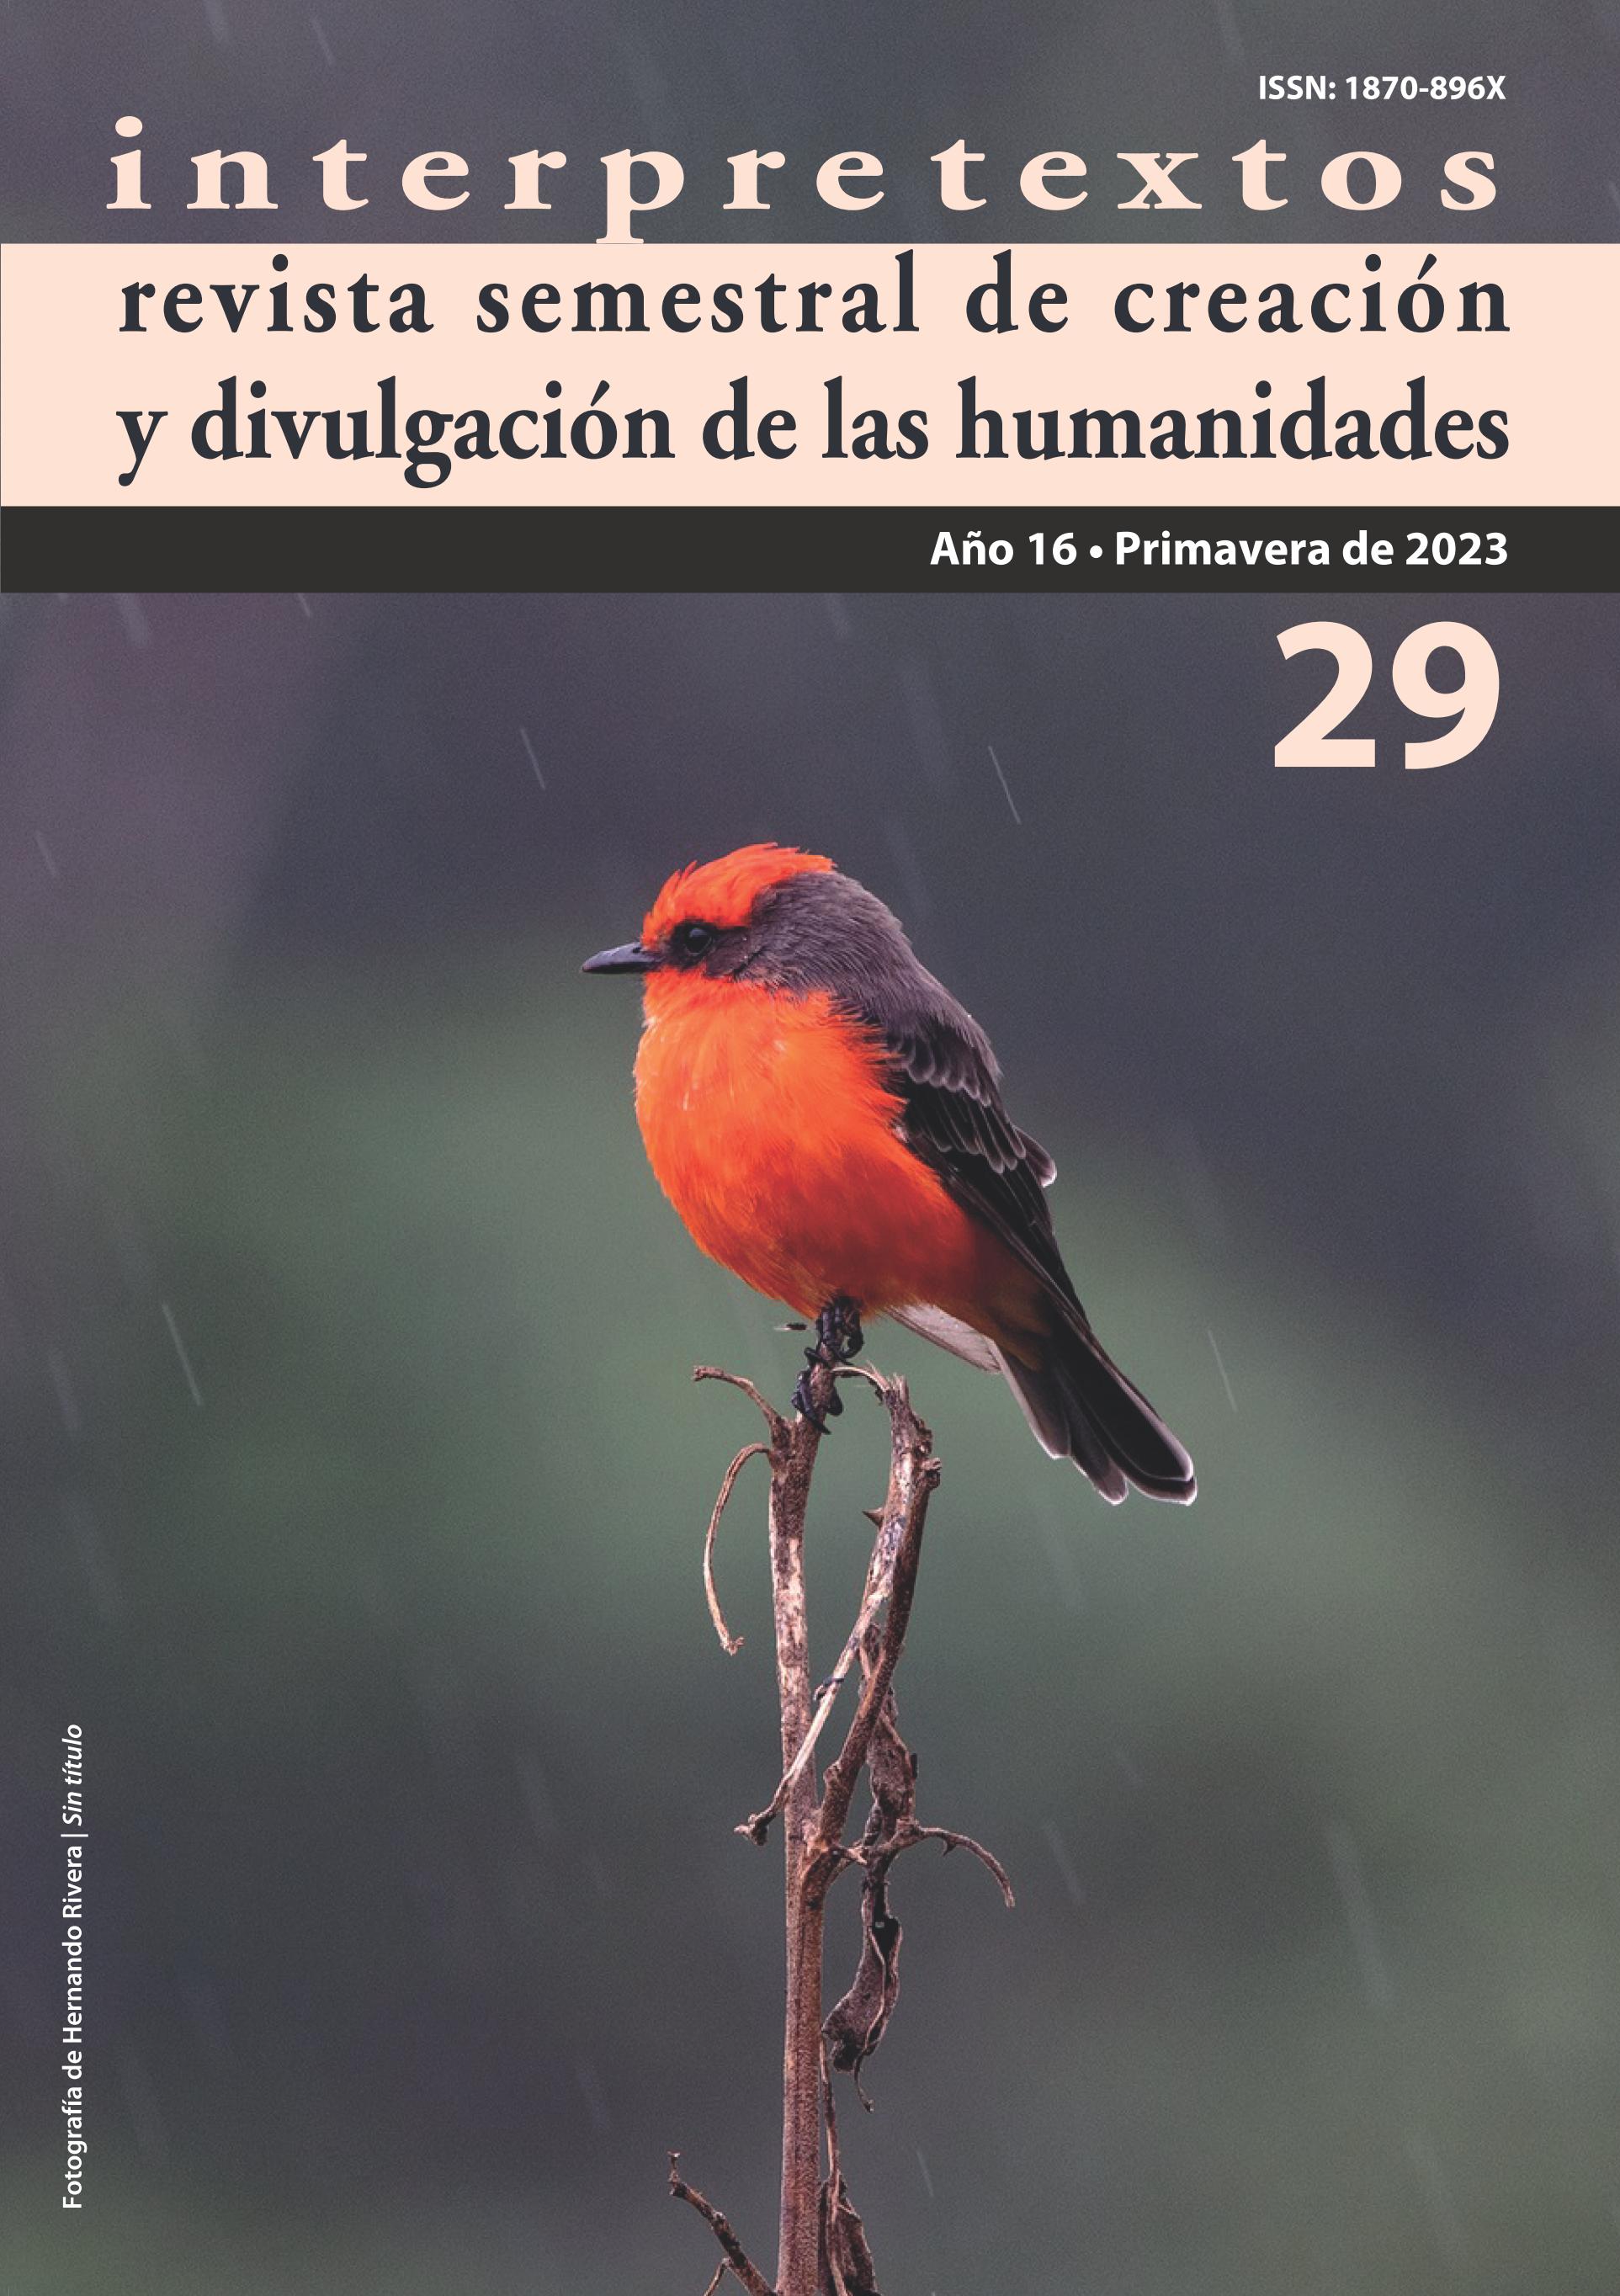 					Ver Vol. 1 Núm. 29 Año (16): Primavera 2023, Interpretextos revista semestral de creación y divulgación de las humanidades
				